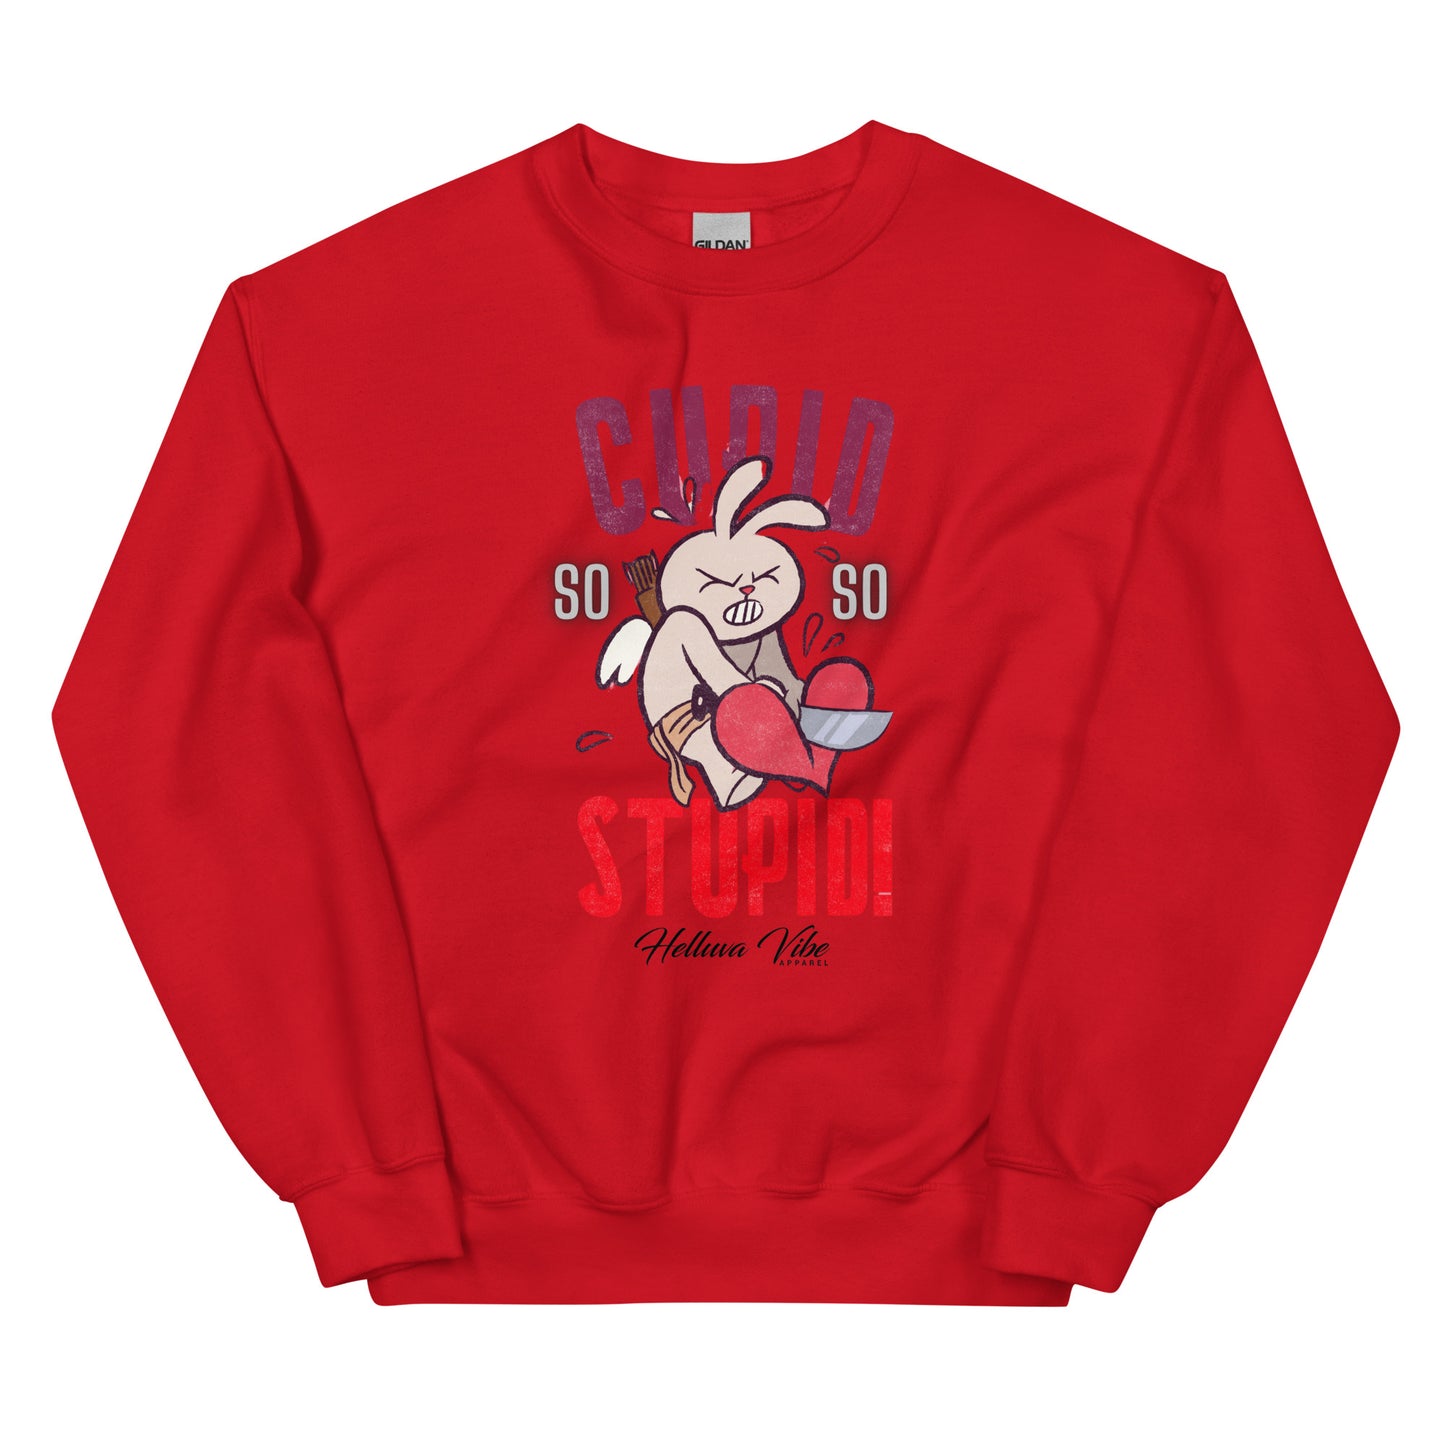 Cupid's Stupid Sweatshirt